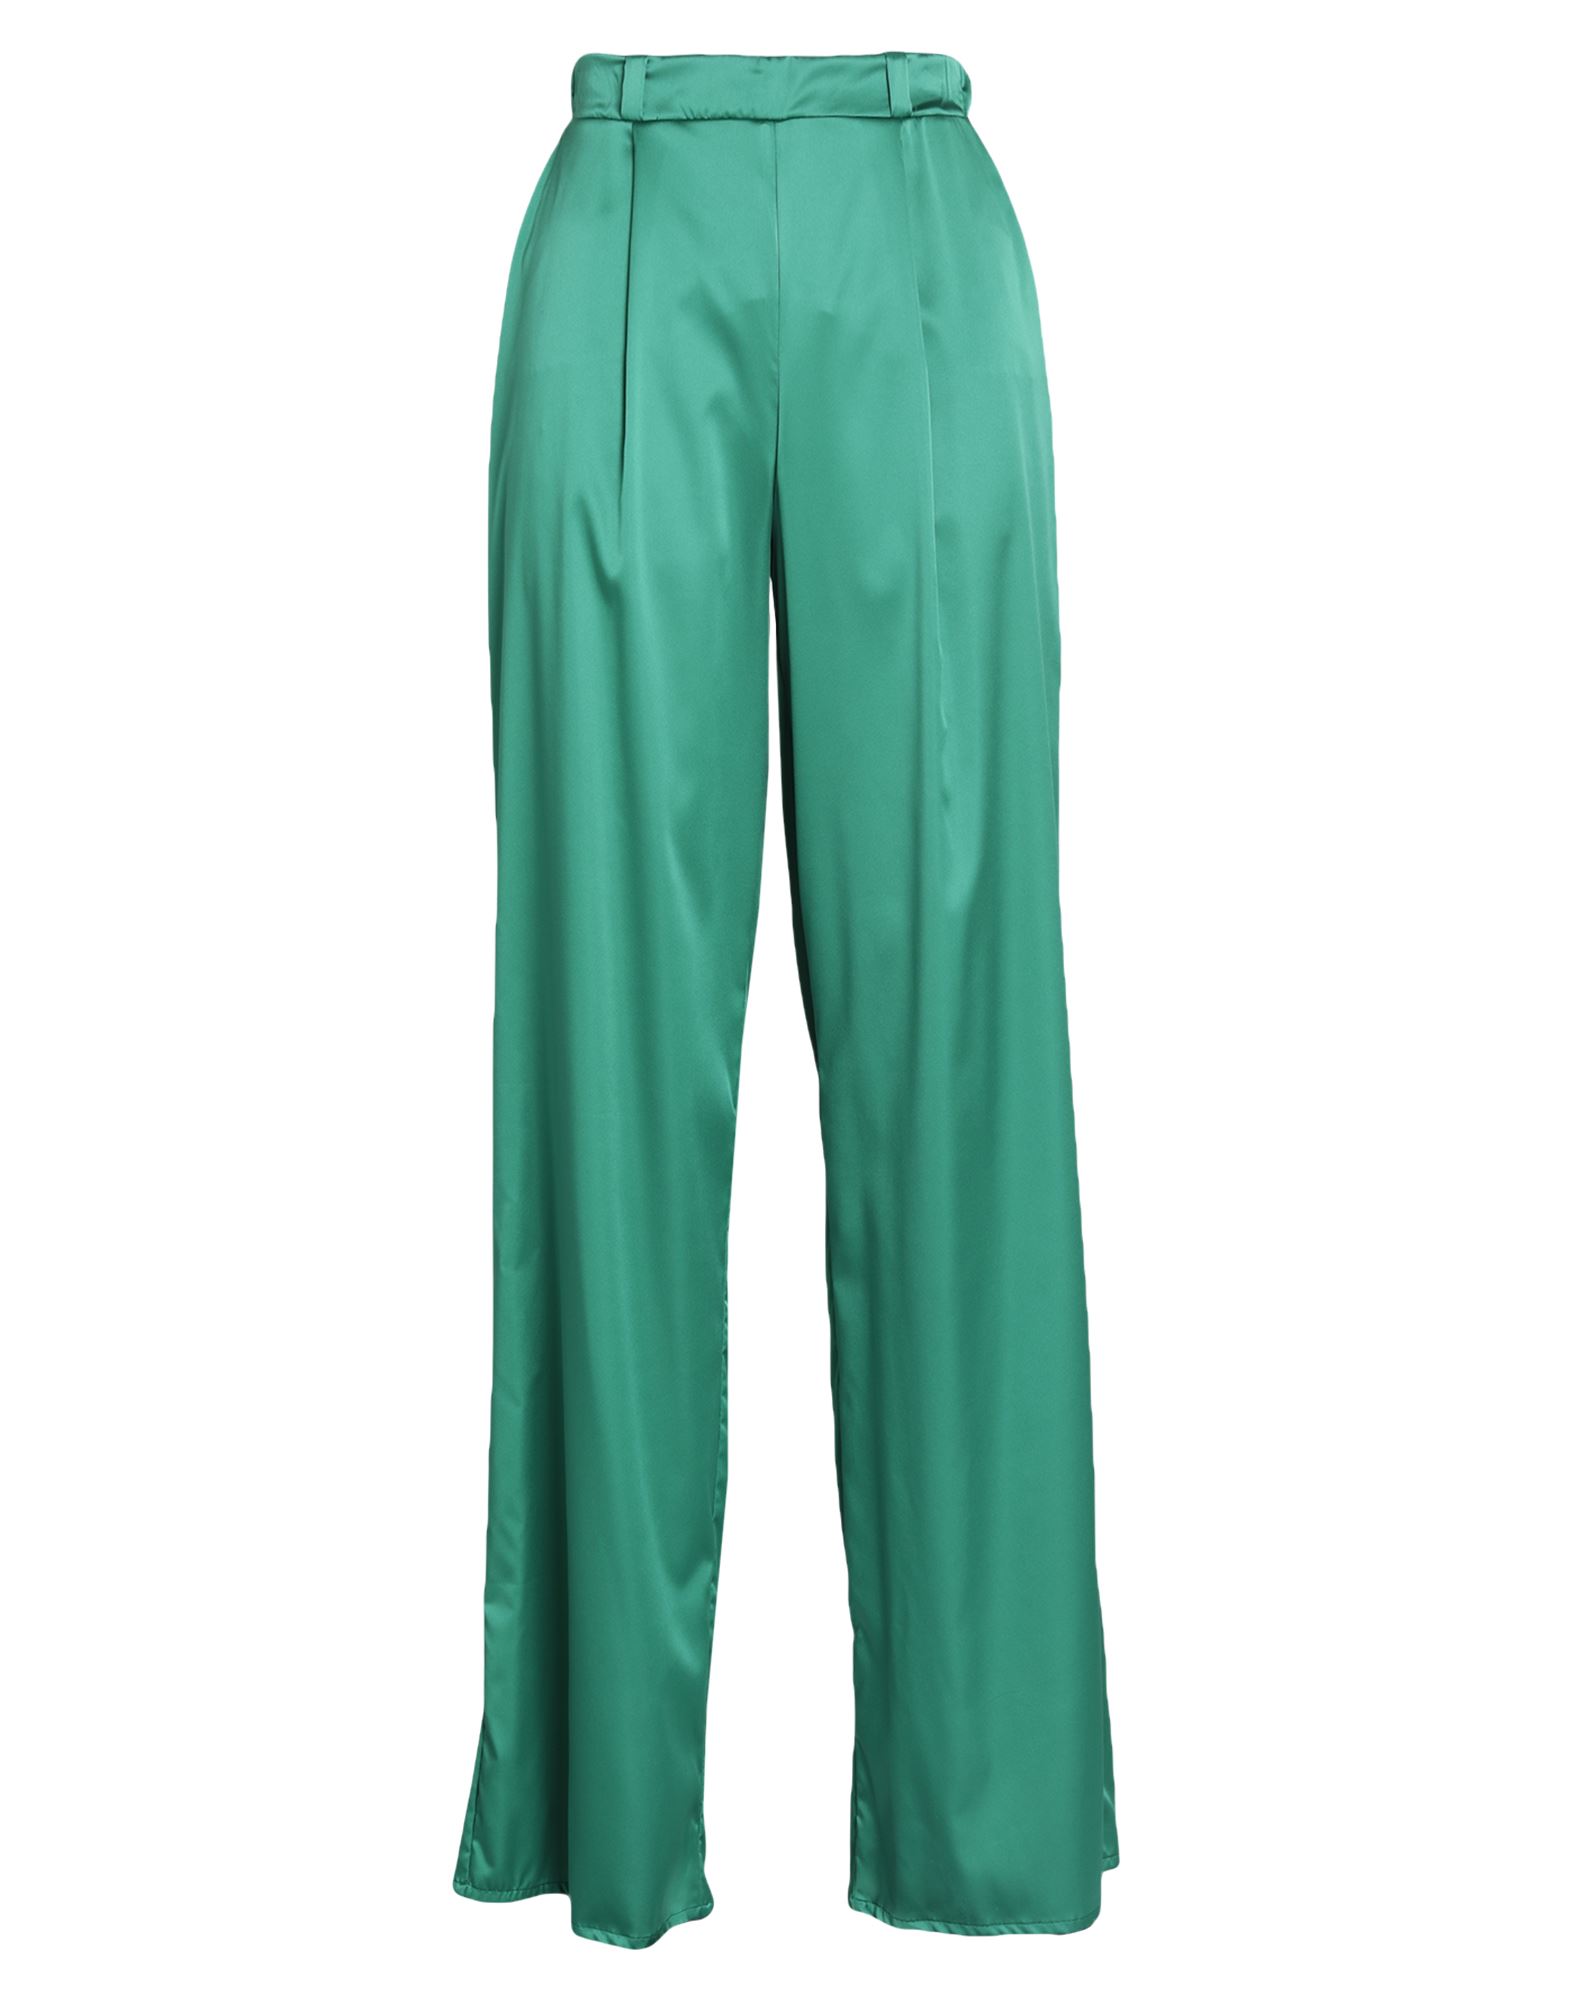 Chiara Boni La Petite Robe Pants In Green